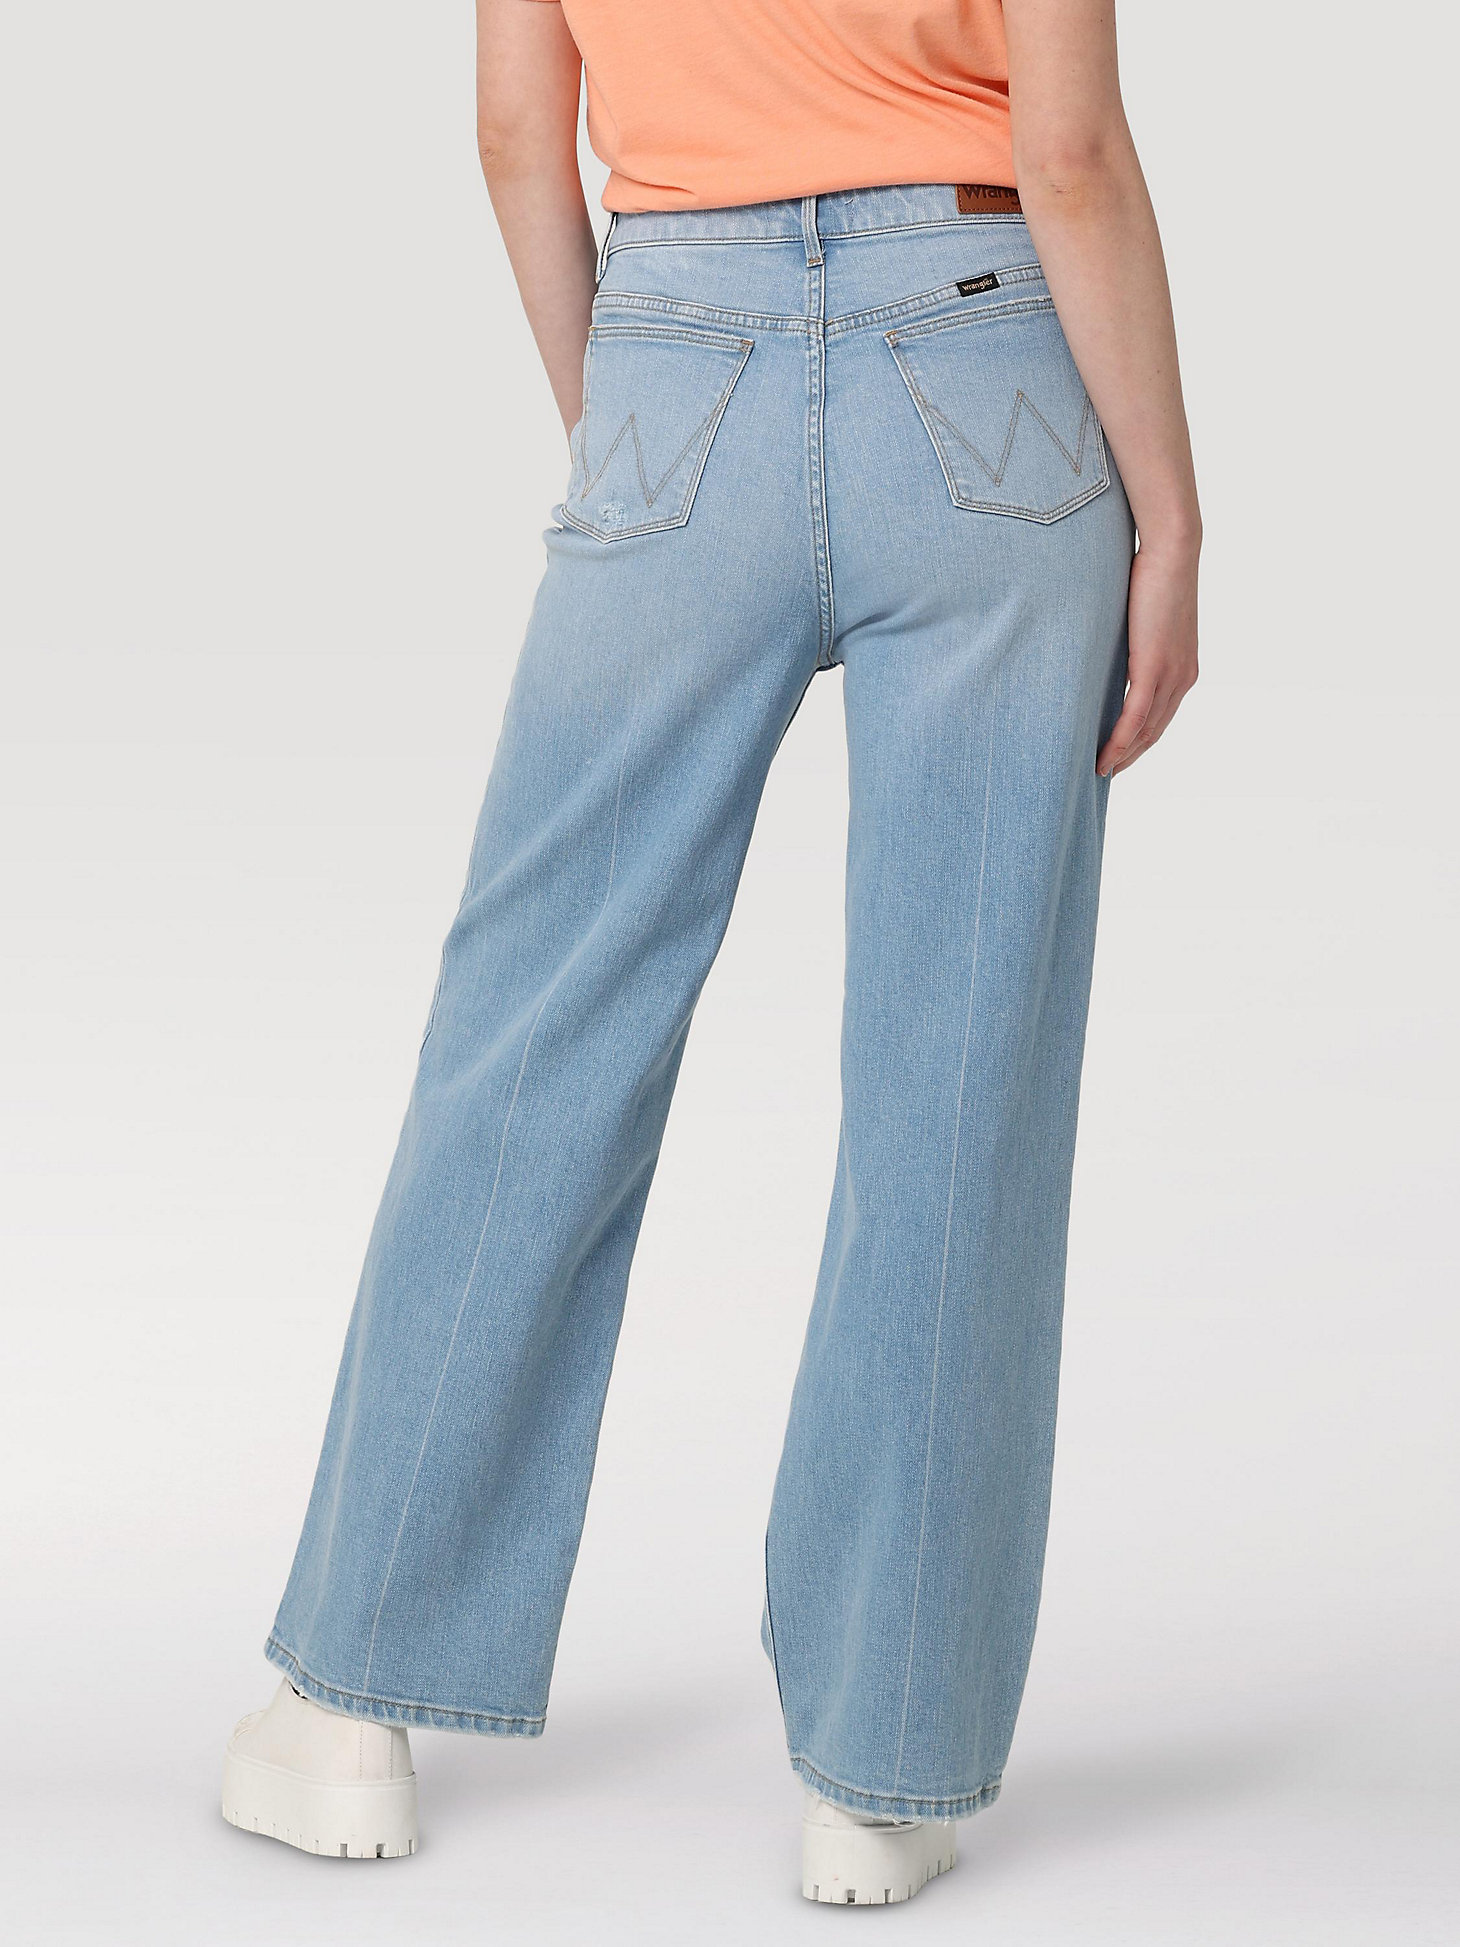 Women's Loose Fit Jean in Light Wash alternative view 4